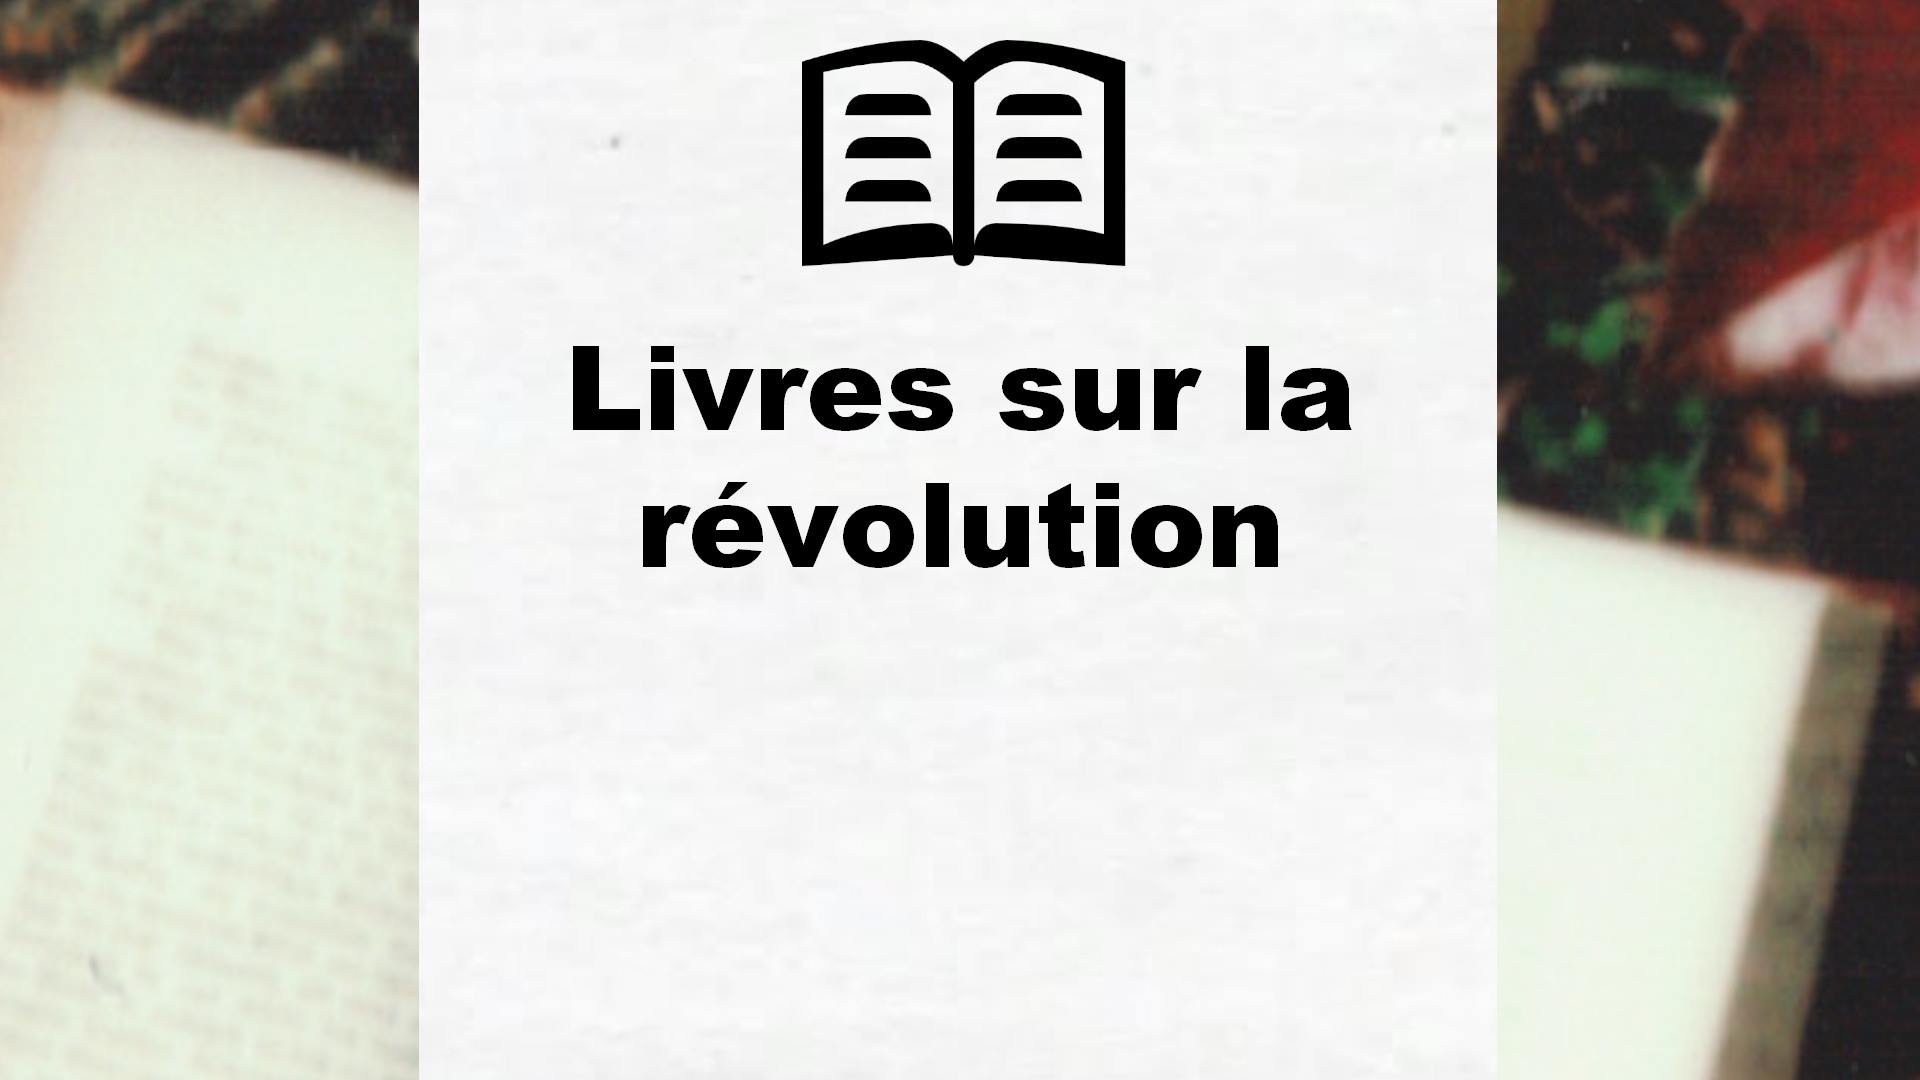 Livres sur la révolution